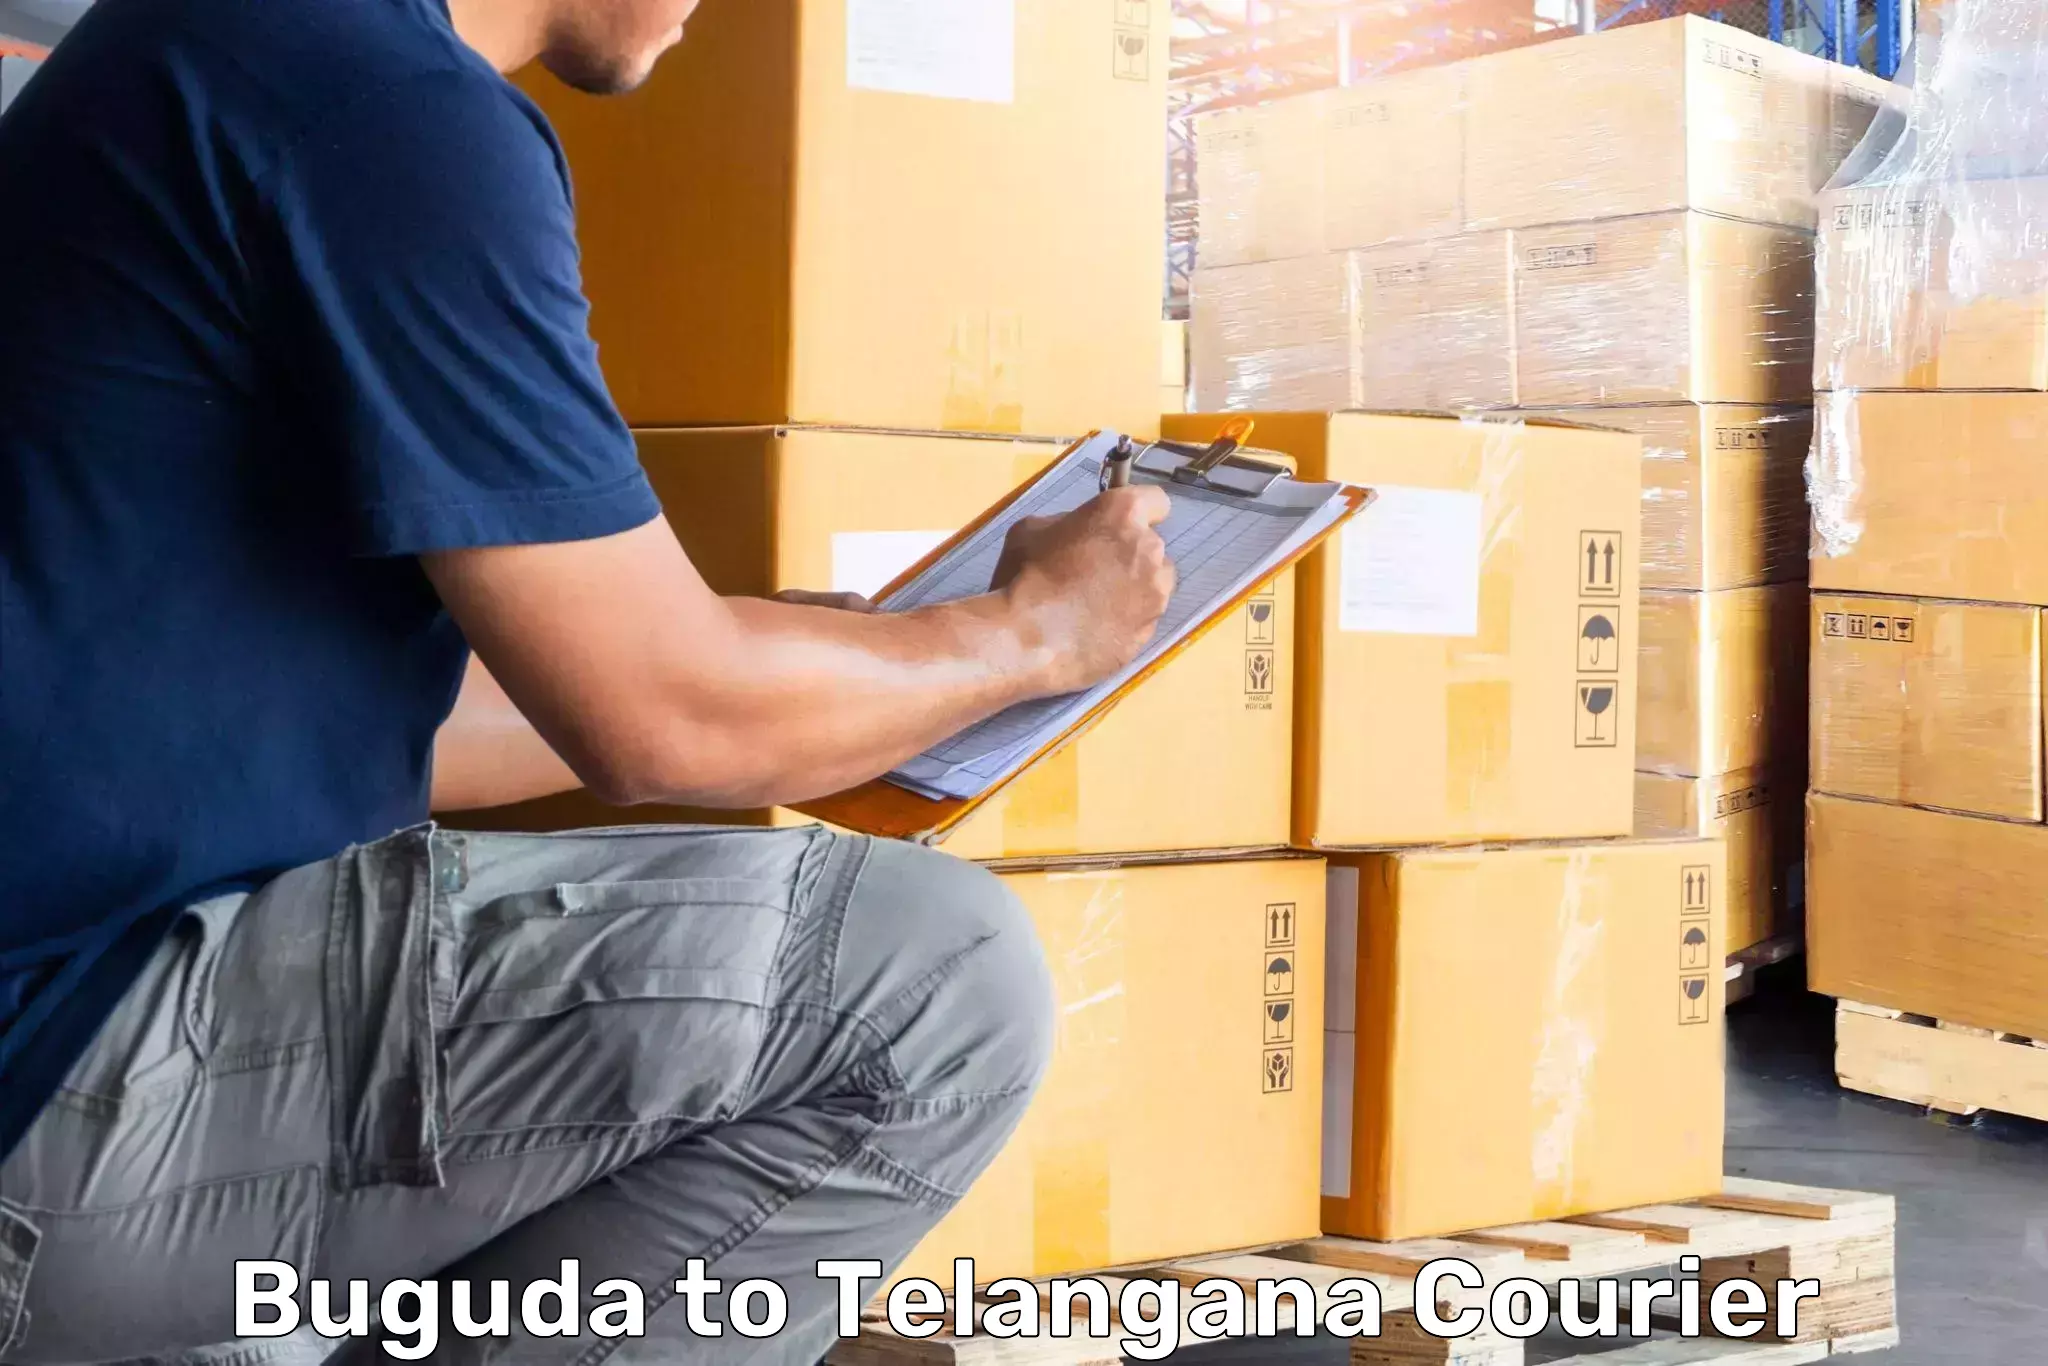 Luggage shipment logistics Buguda to Manthani